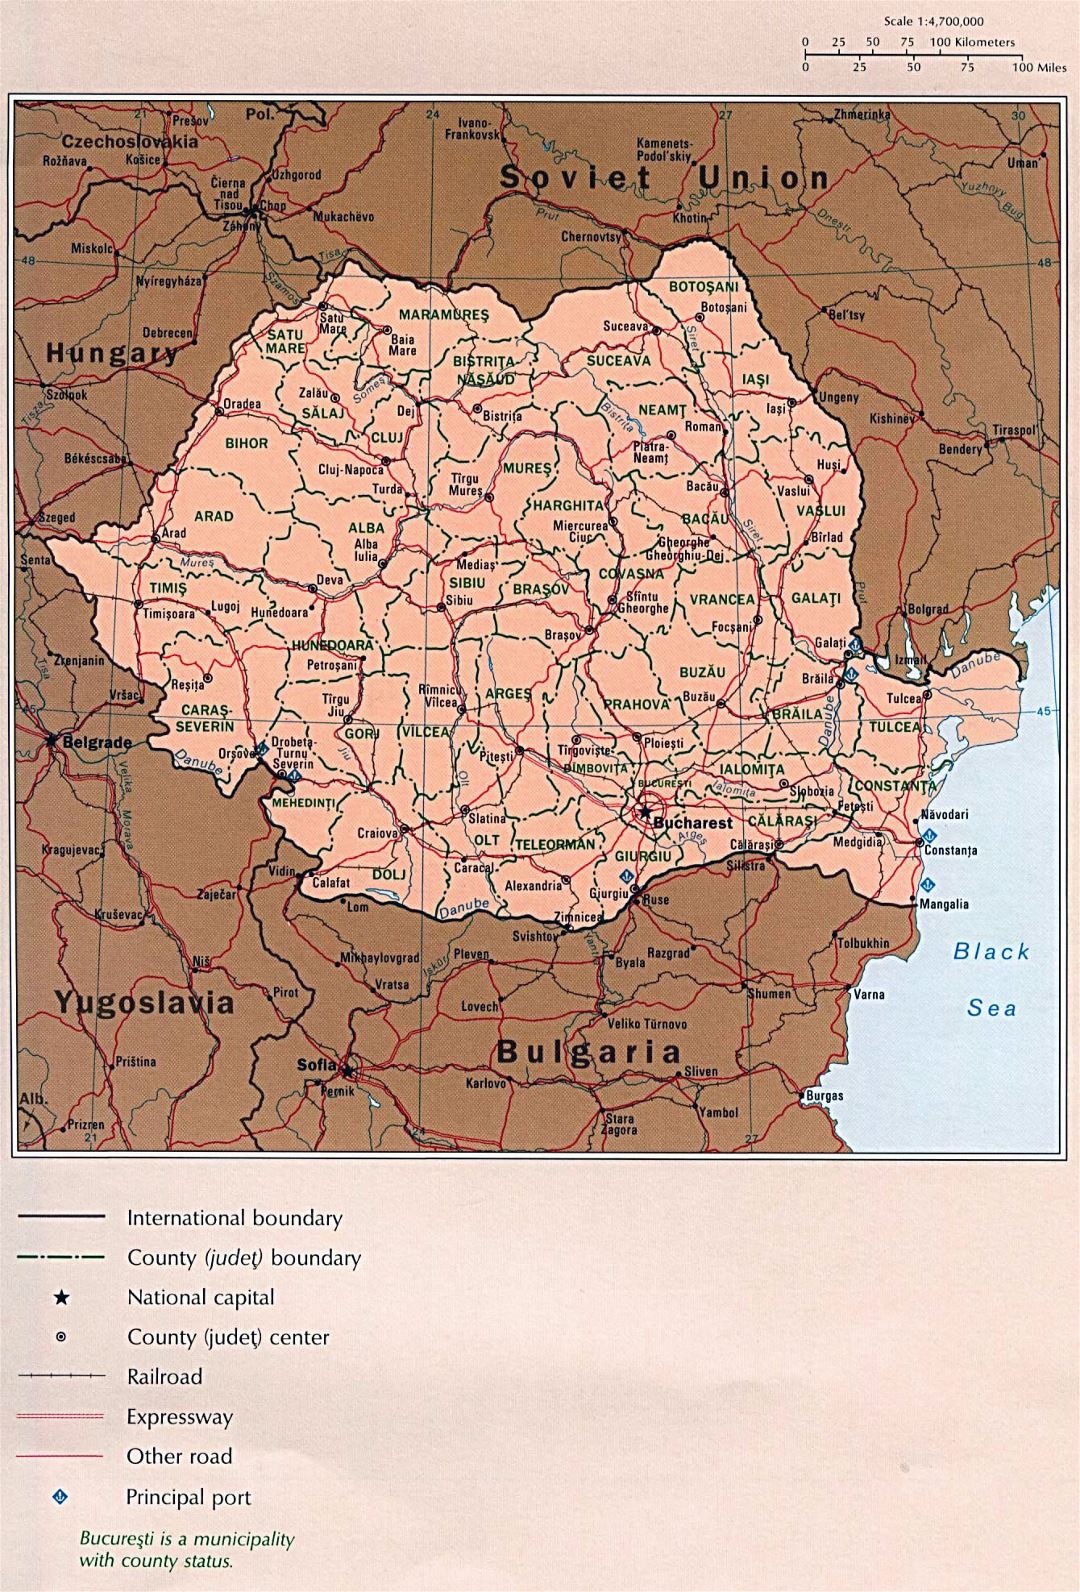 Grande detallado mapa político y administrativo de Rumania con carreteras, ferrocarriles y grandes ciudades